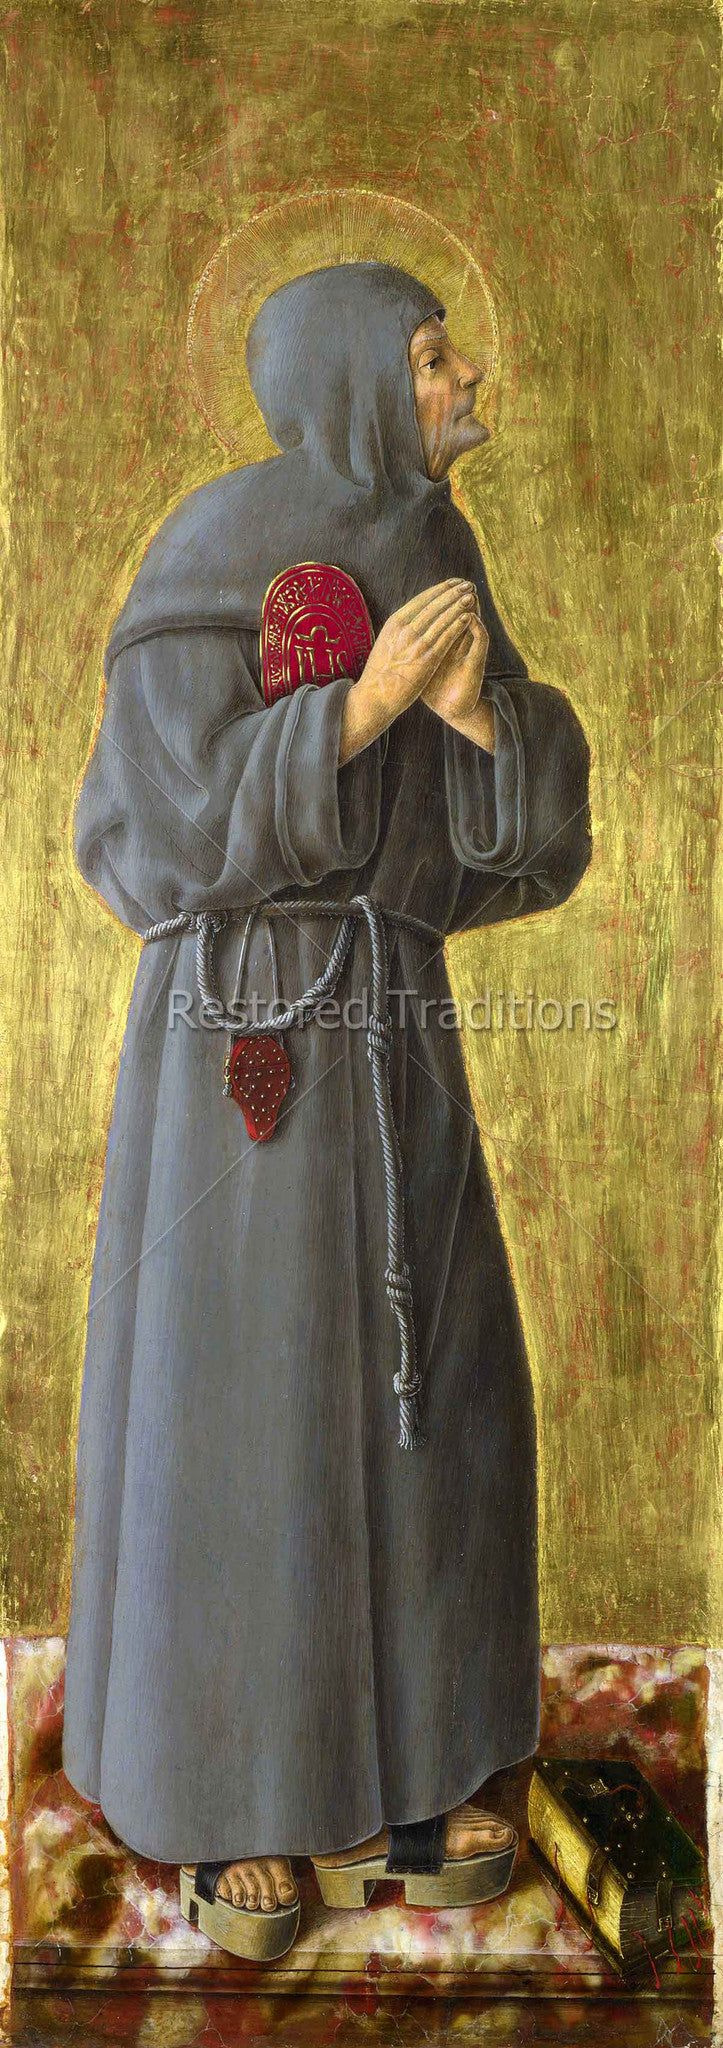 Franciscan friar